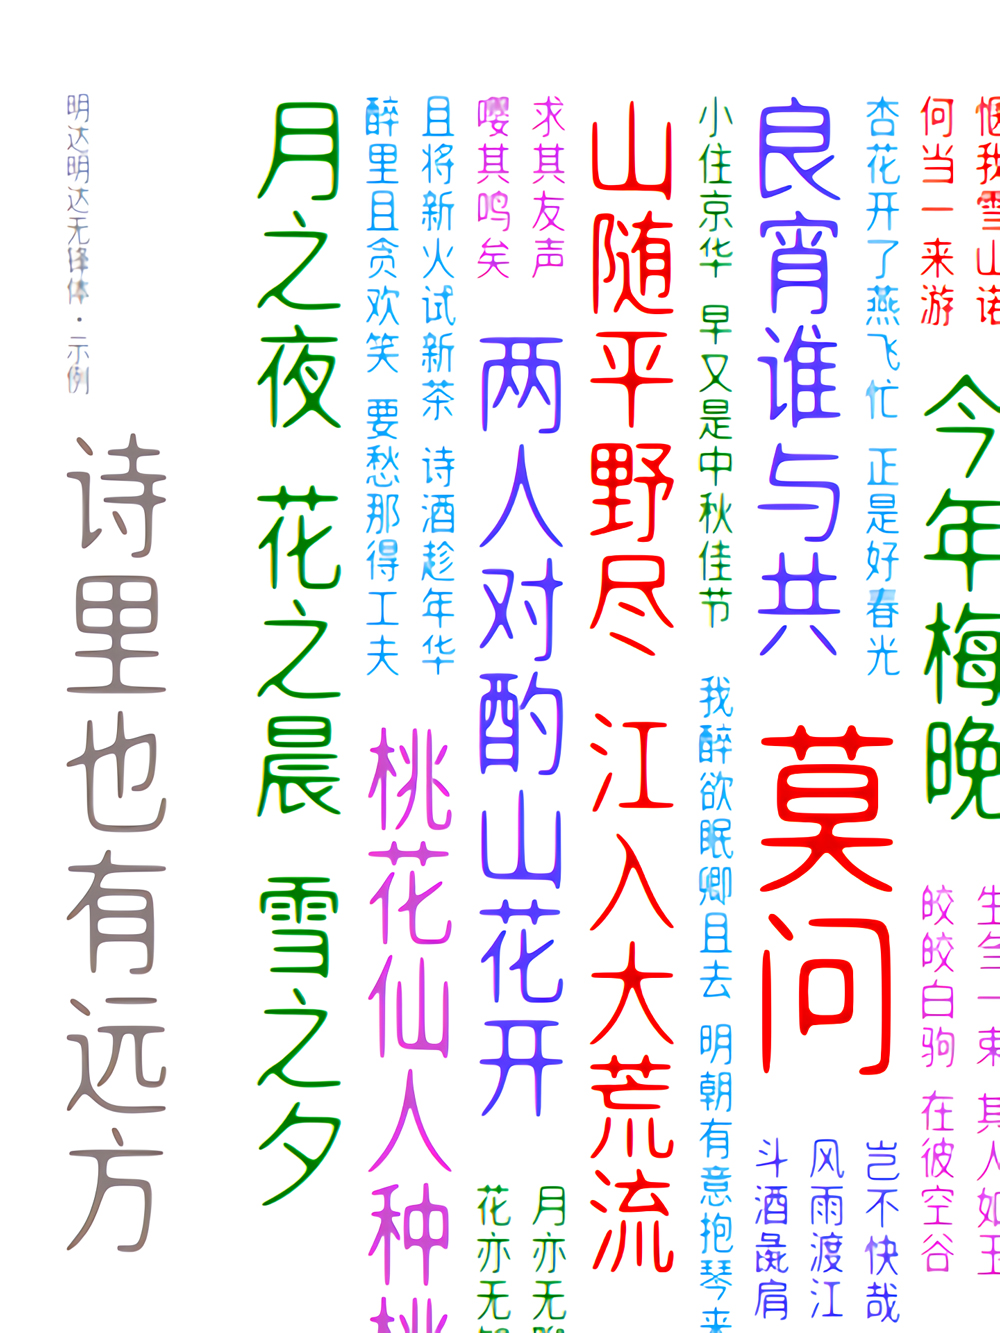 免费字体下载！一款舒展且圆润的中文字体：明达明达无锋体